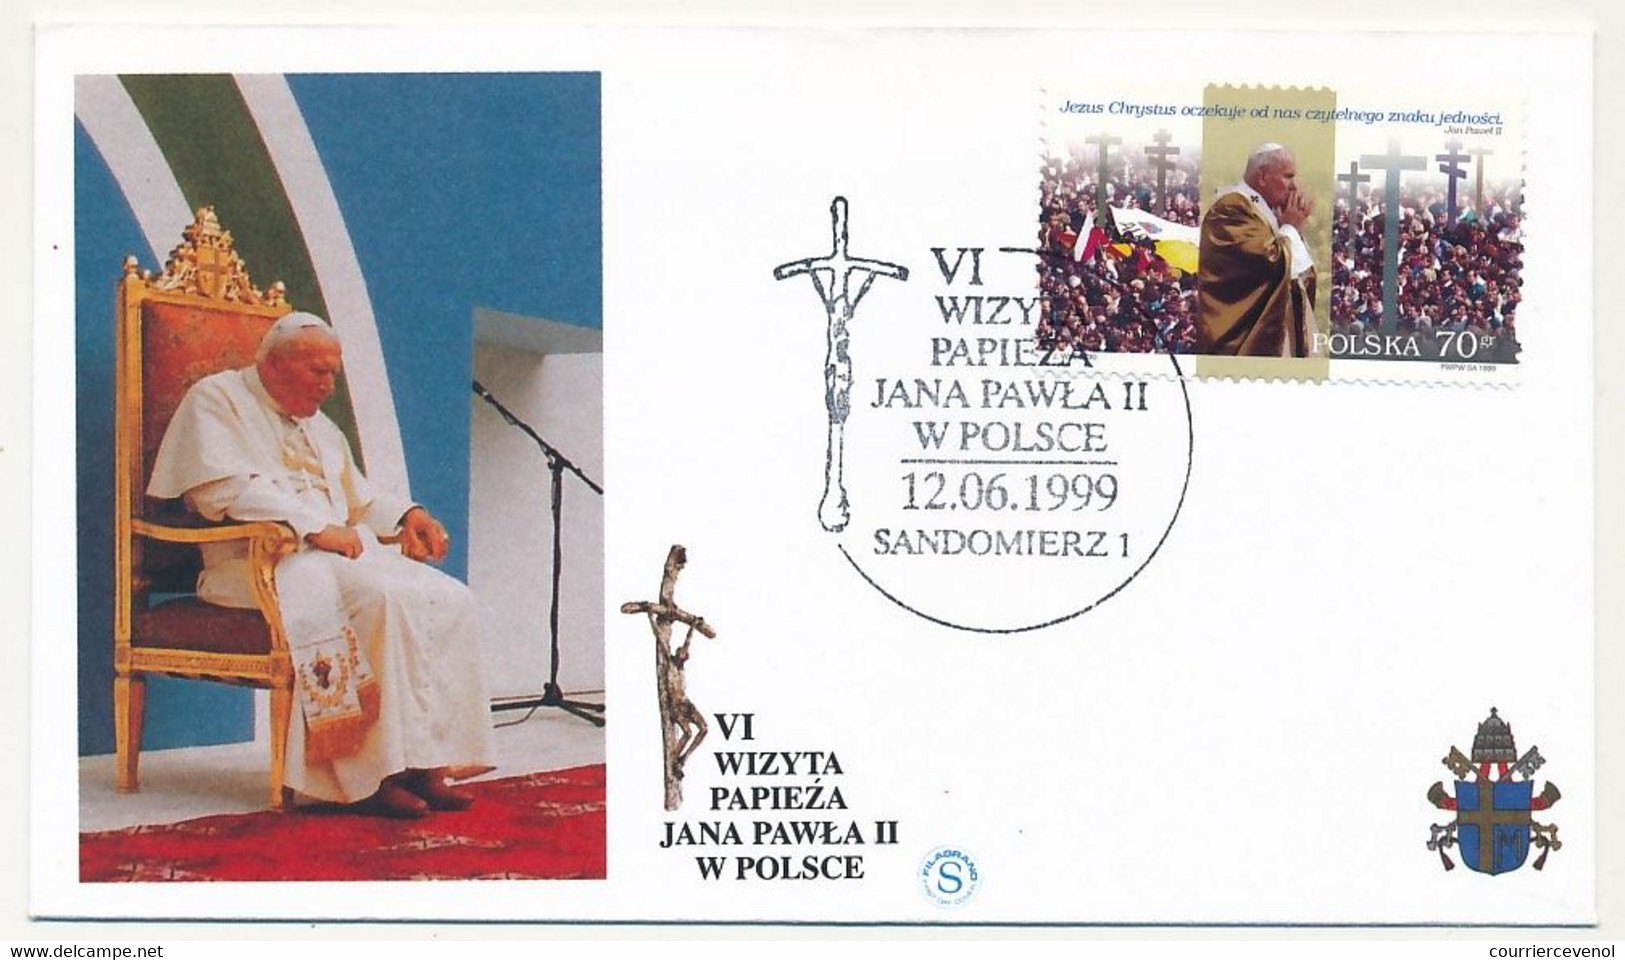 POLOGNE - 8 enveloppes illustrées - Voyage du Pape Jean Paul II en Pologne - Juin 1999